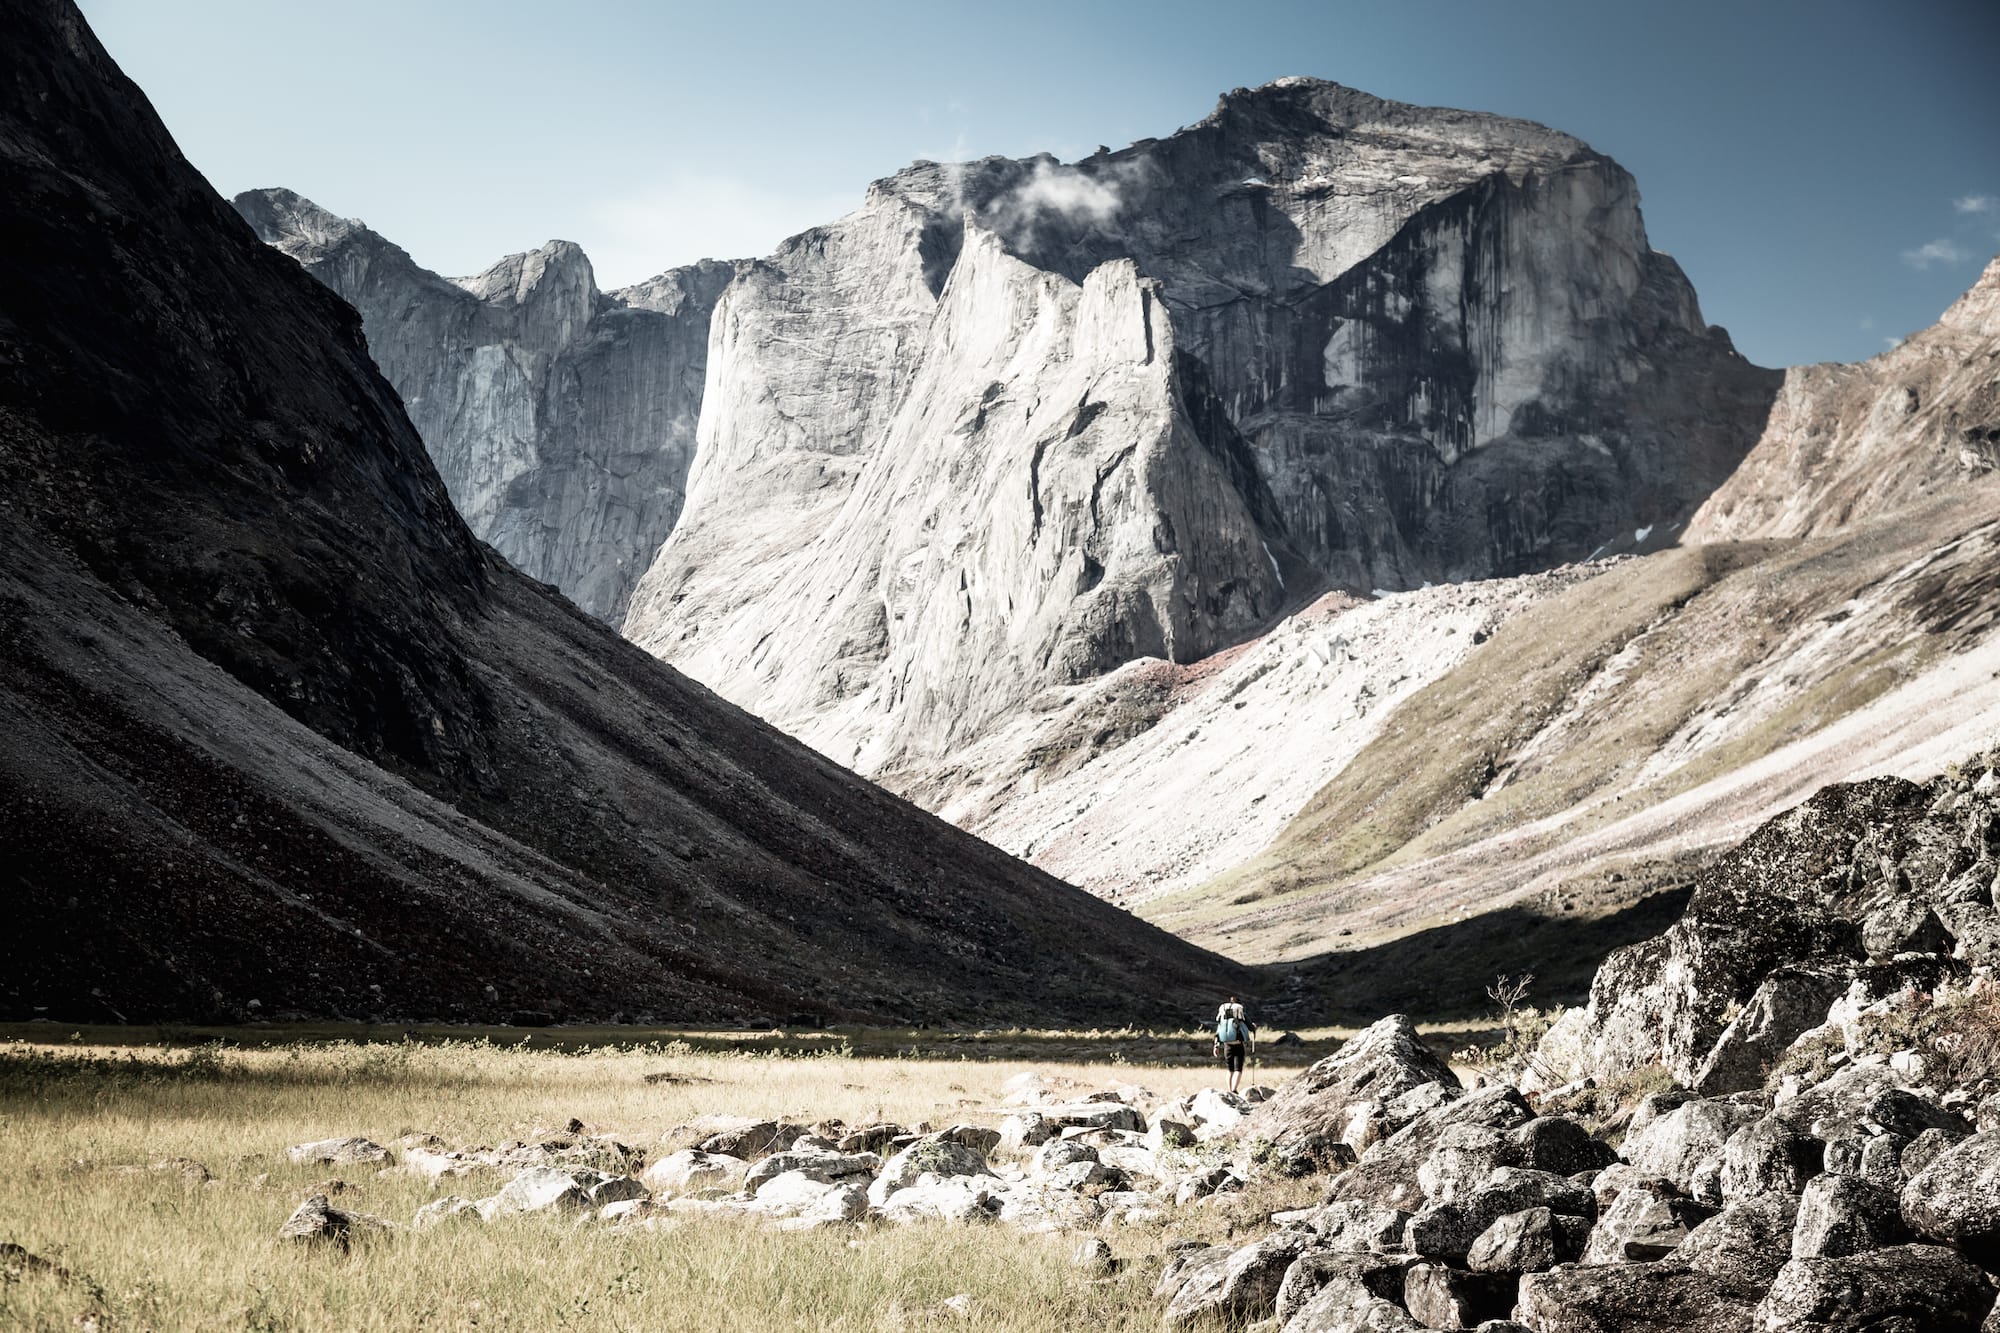 Ultralight backpacker traversing valley between mountains